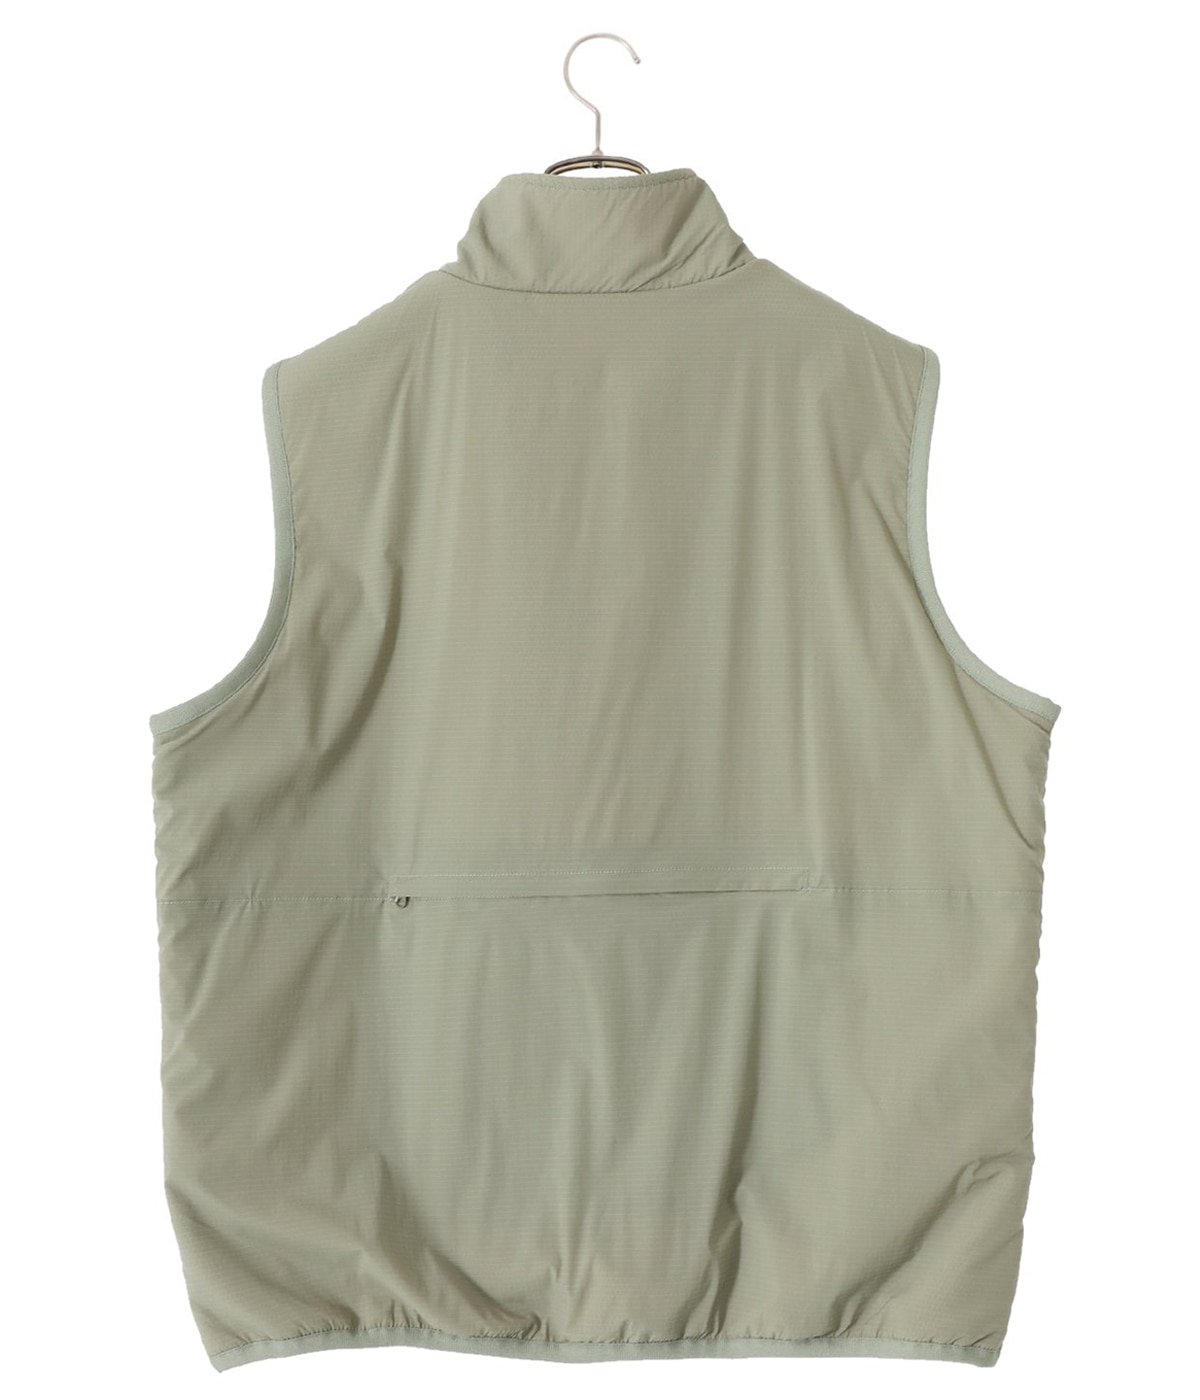 Cordura Ripstop Reversible Vest | Caledoor(カレドアー) / トップス